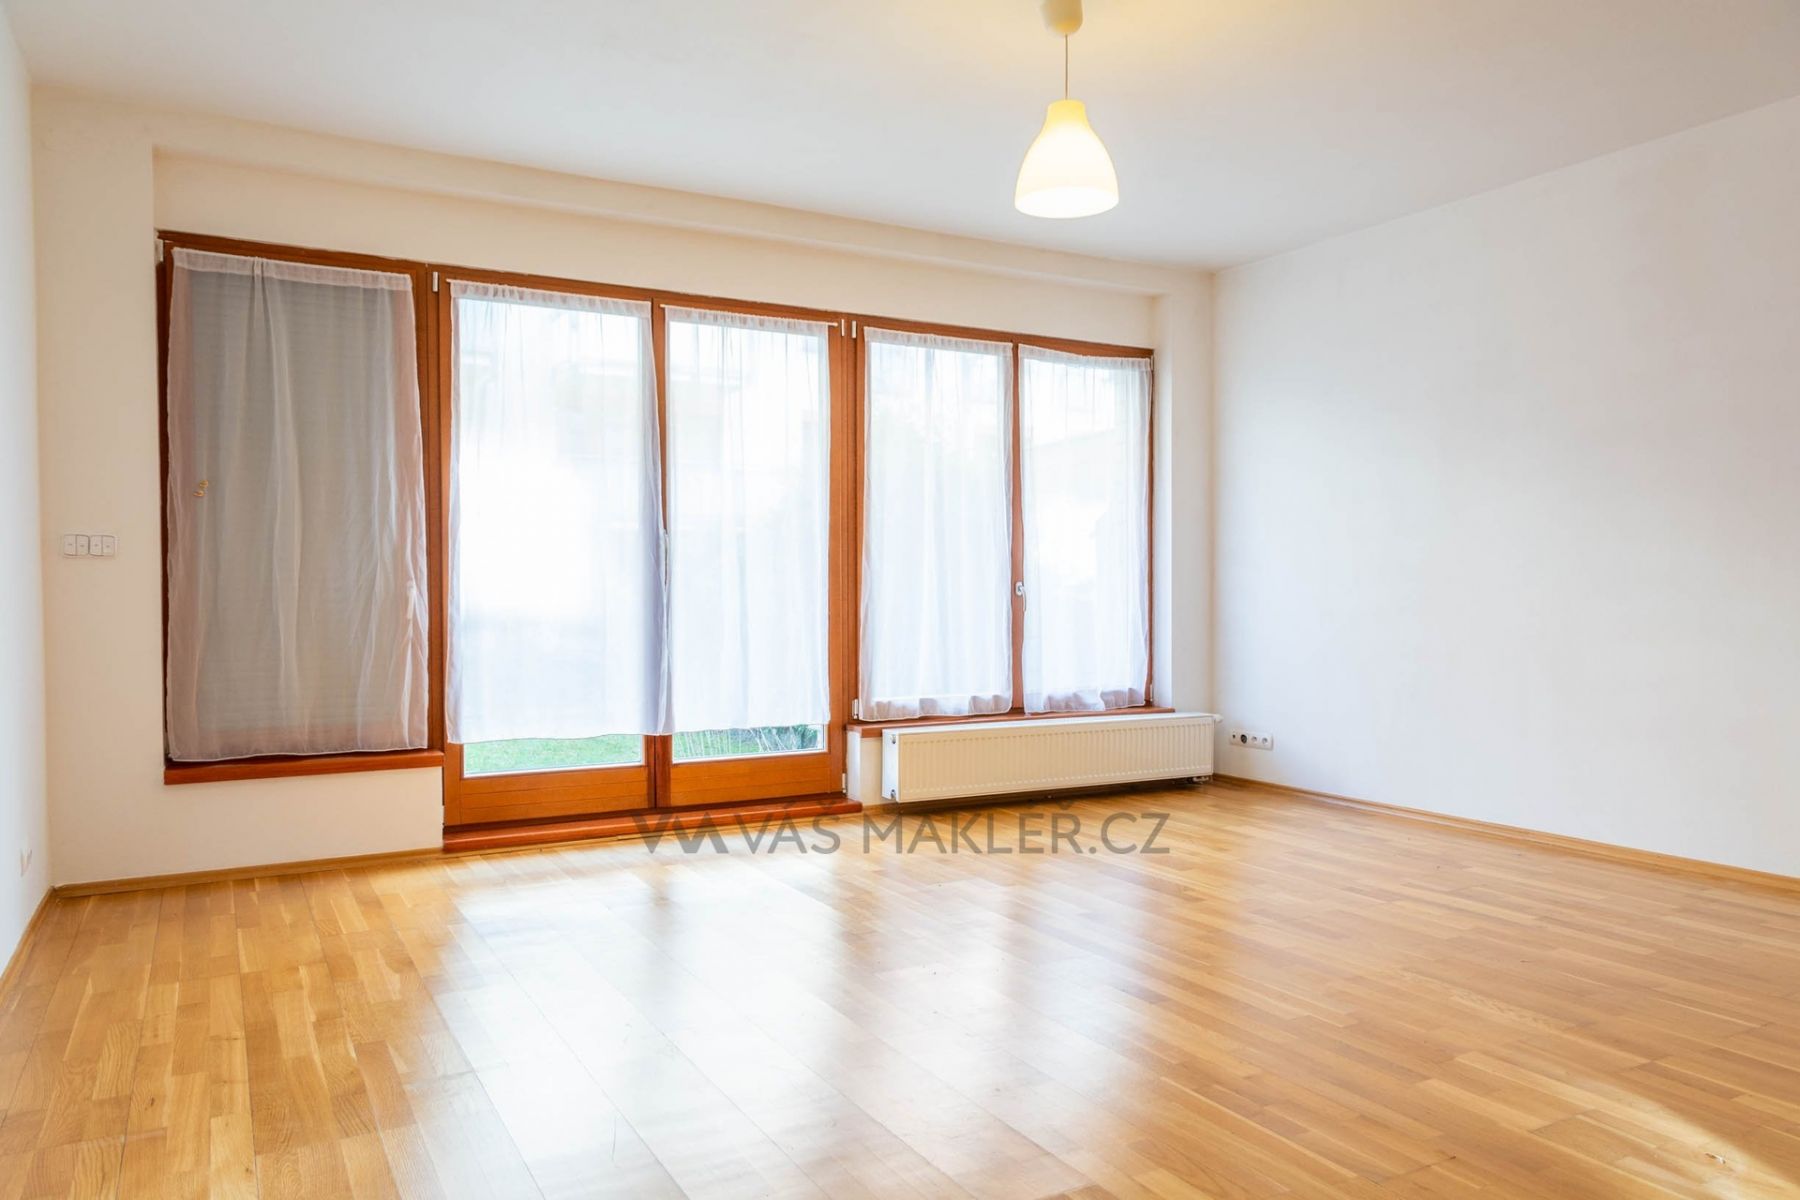 Světlý byt, 1/kk, v novostavbě s předzahrádkou (95 m2), Stodůlky, obrázek č. 1